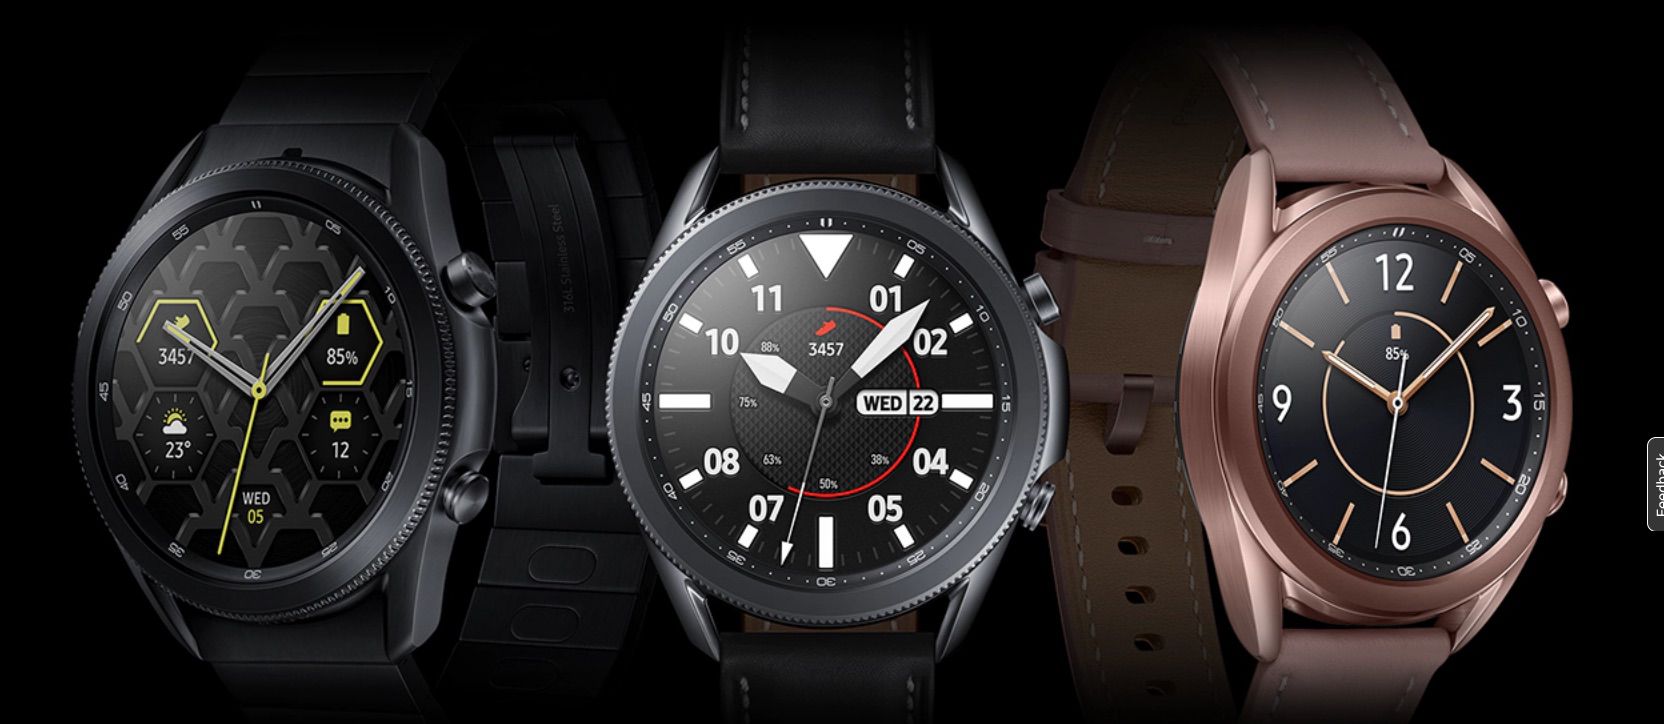 Samsung Galaxy Watch3 -älykello vaihtoehto Apple Watchille